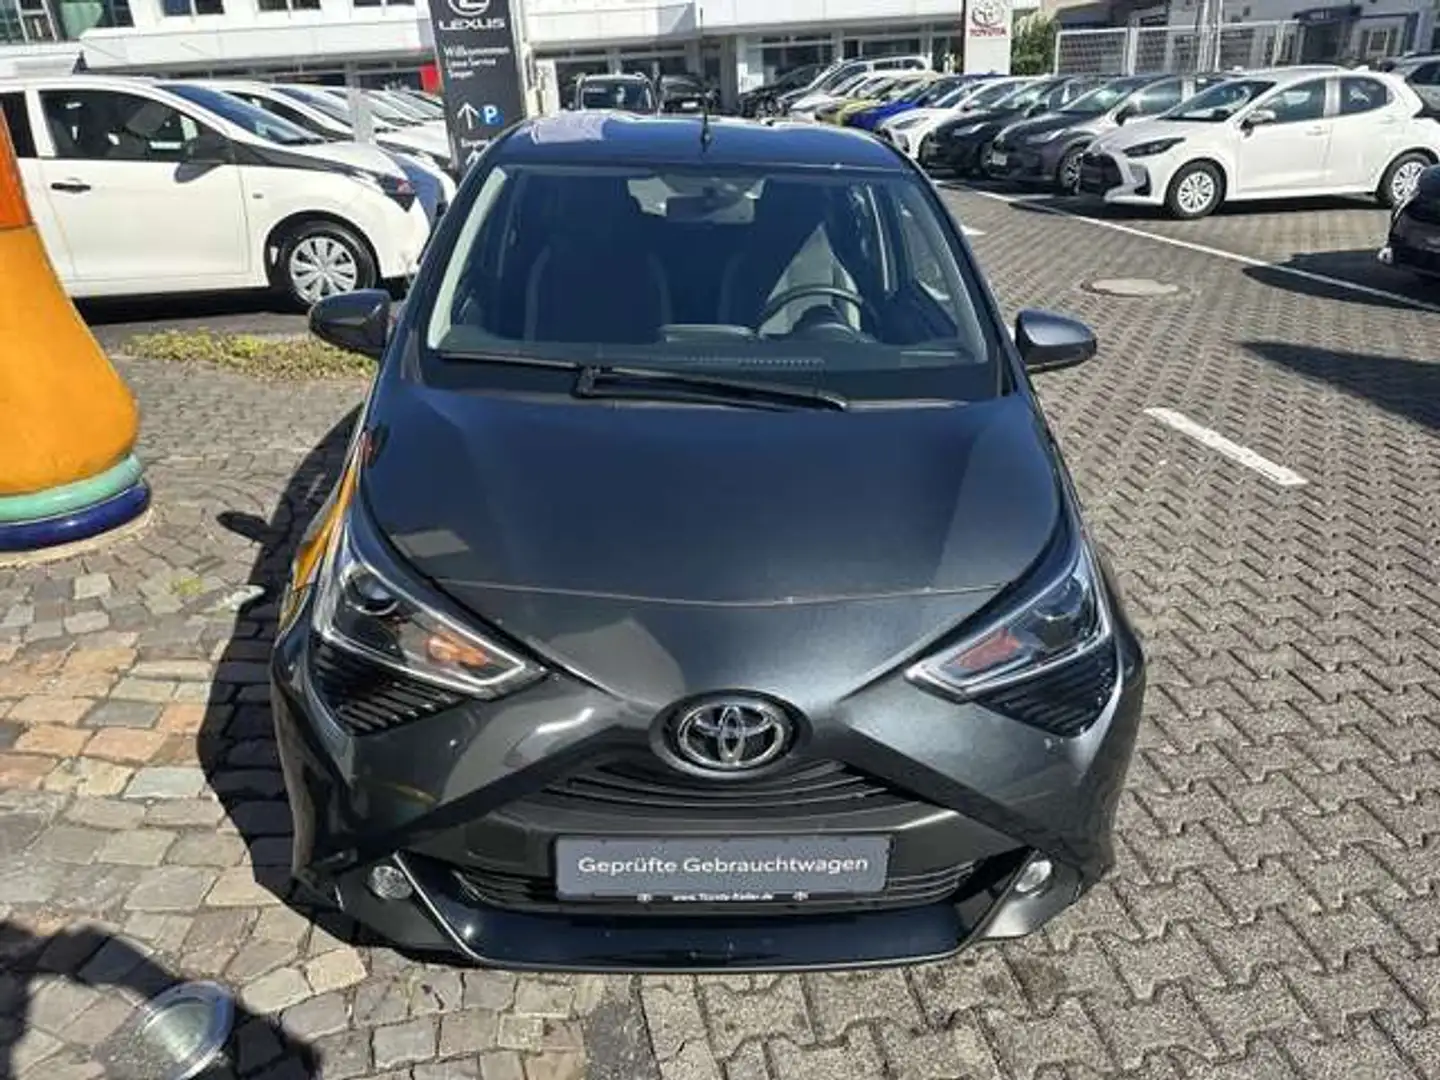 Toyota Aygo Kleinwagen in Grau gebraucht in Limburg für € 12.390,-